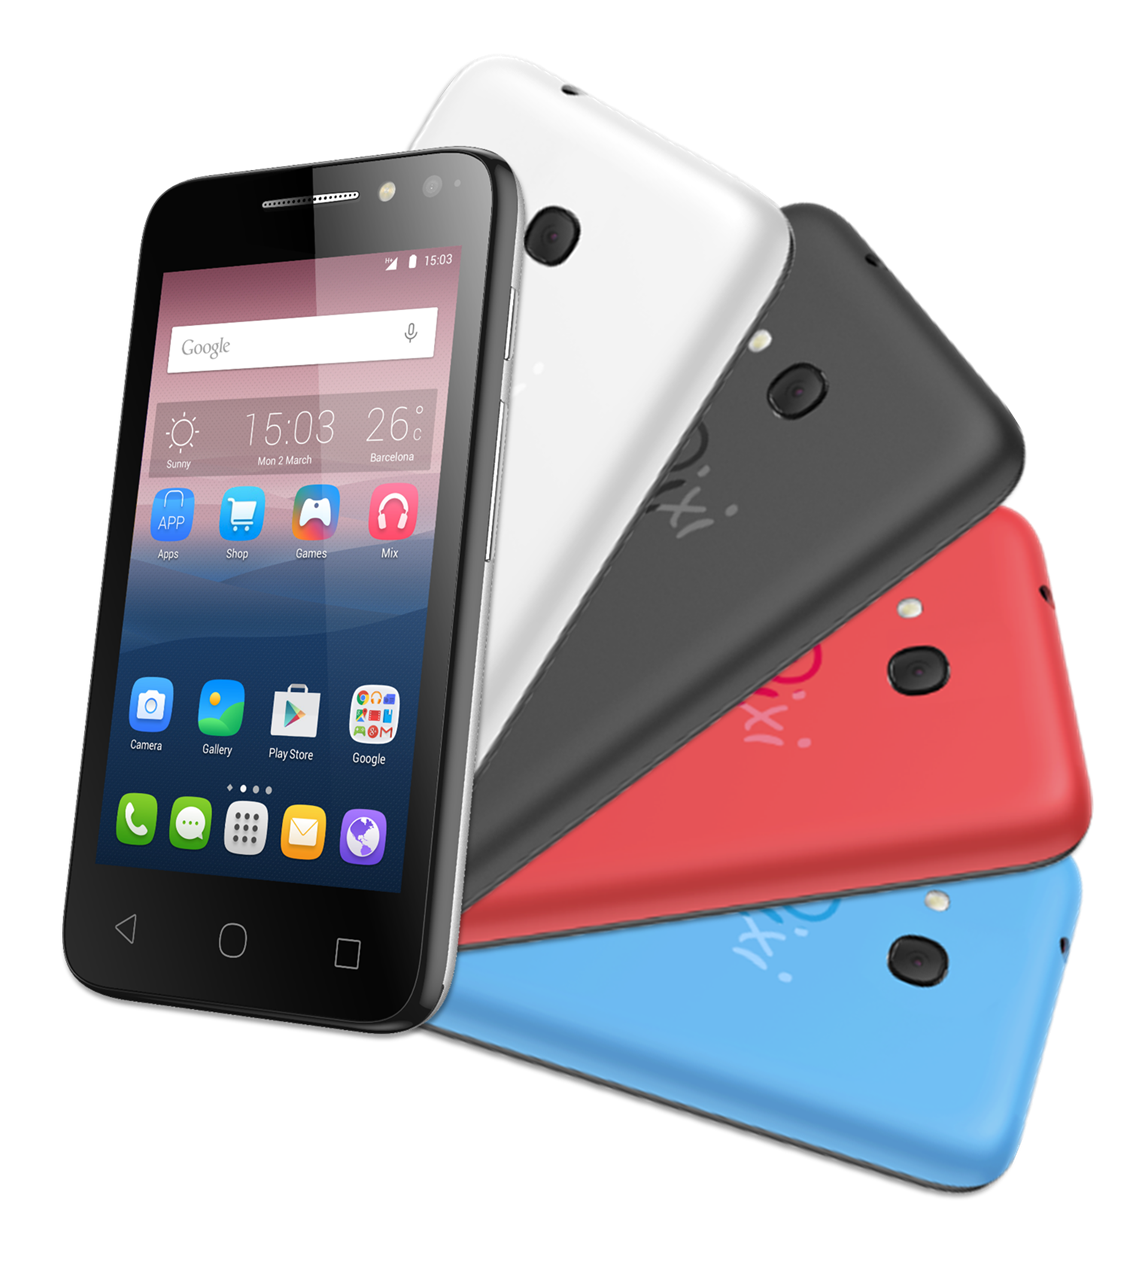 0000471_smartphone-alcatel-pixi4-40-kit-colors-4-capas-desbloqueado-dual-sim